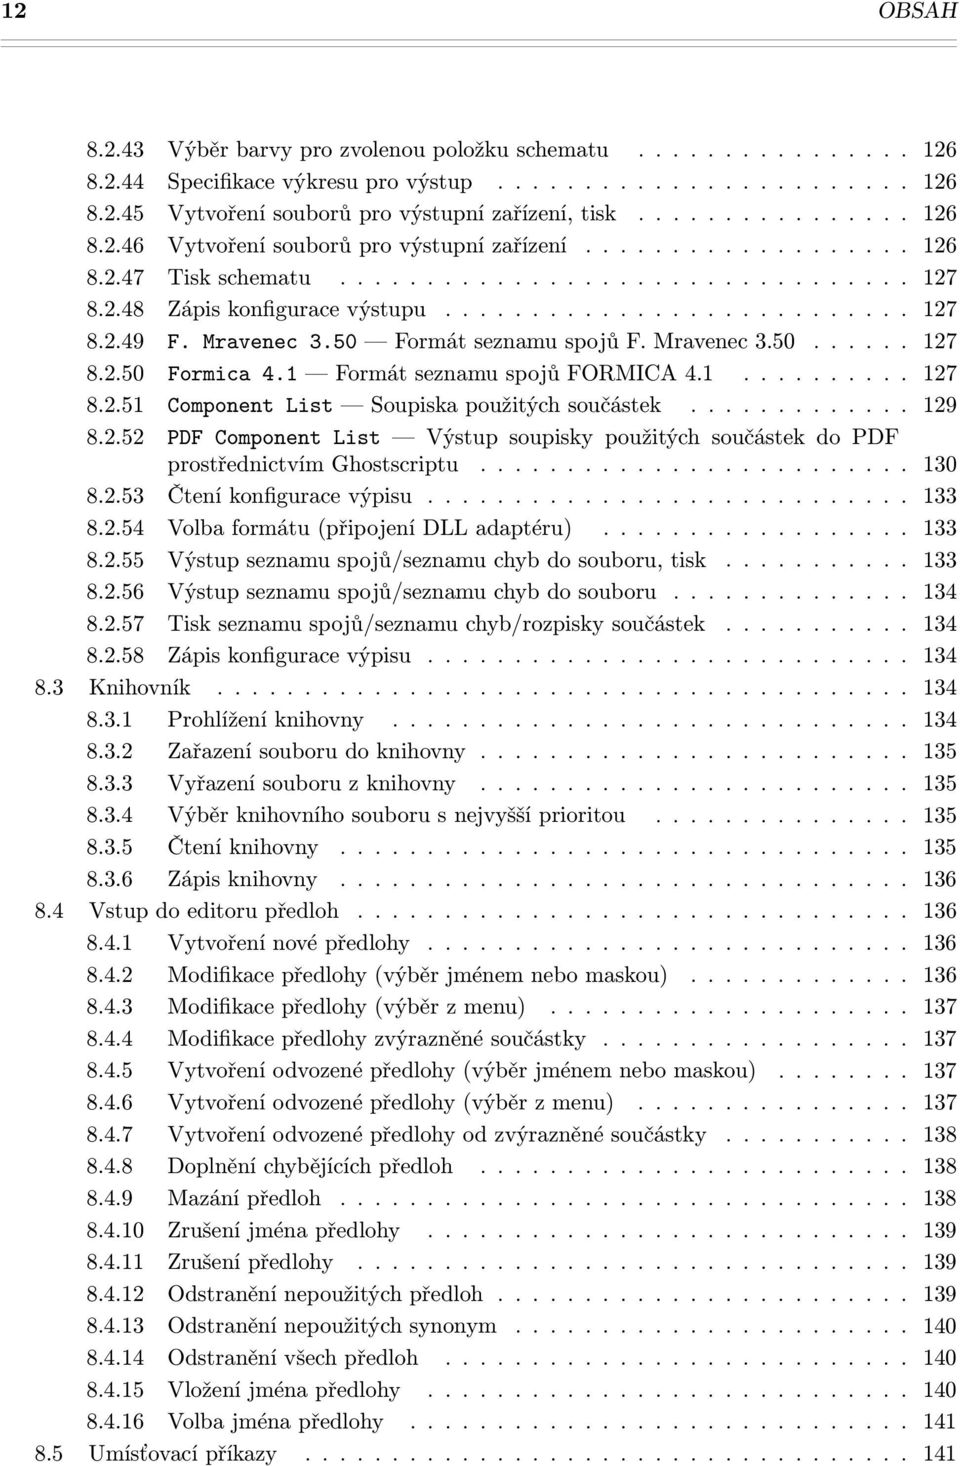 Mravenec 3.50 Formát seznamu spojů F. Mravenec 3.50...... 127 8.2.50 Formica 4.1 Formát seznamu spojů FORMICA 4.1.......... 127 8.2.51 Component List Soupiska použitých součástek............. 129 8.2.52 PDF Component List Výstup soupisky použitých součástek do PDF prostřednictvím Ghostscriptu.